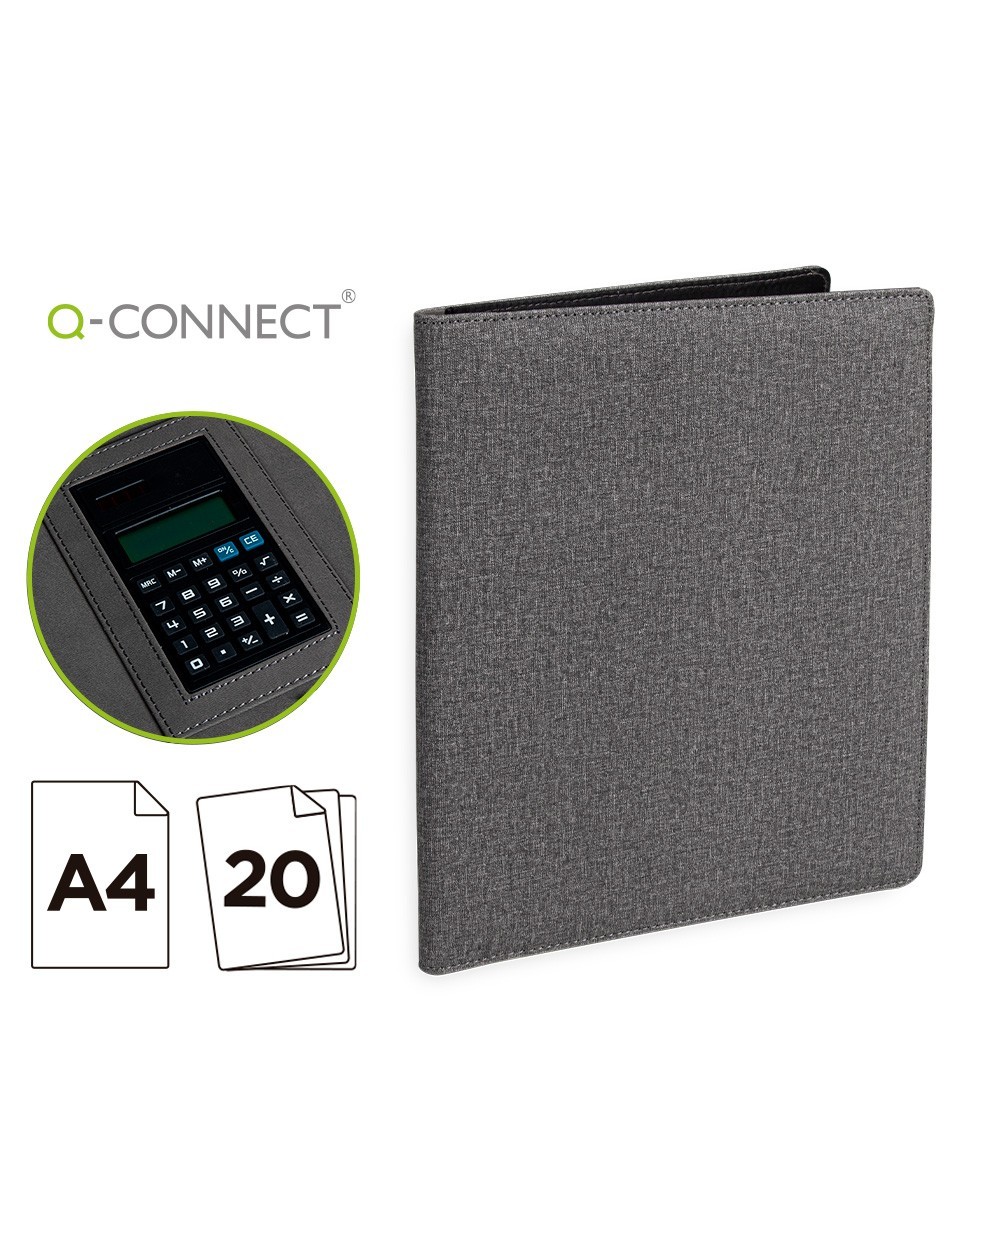 Carpeta portafolios q connect a4 con calculadora bloc 20 hojas y departamentos interiores color gris 250x315